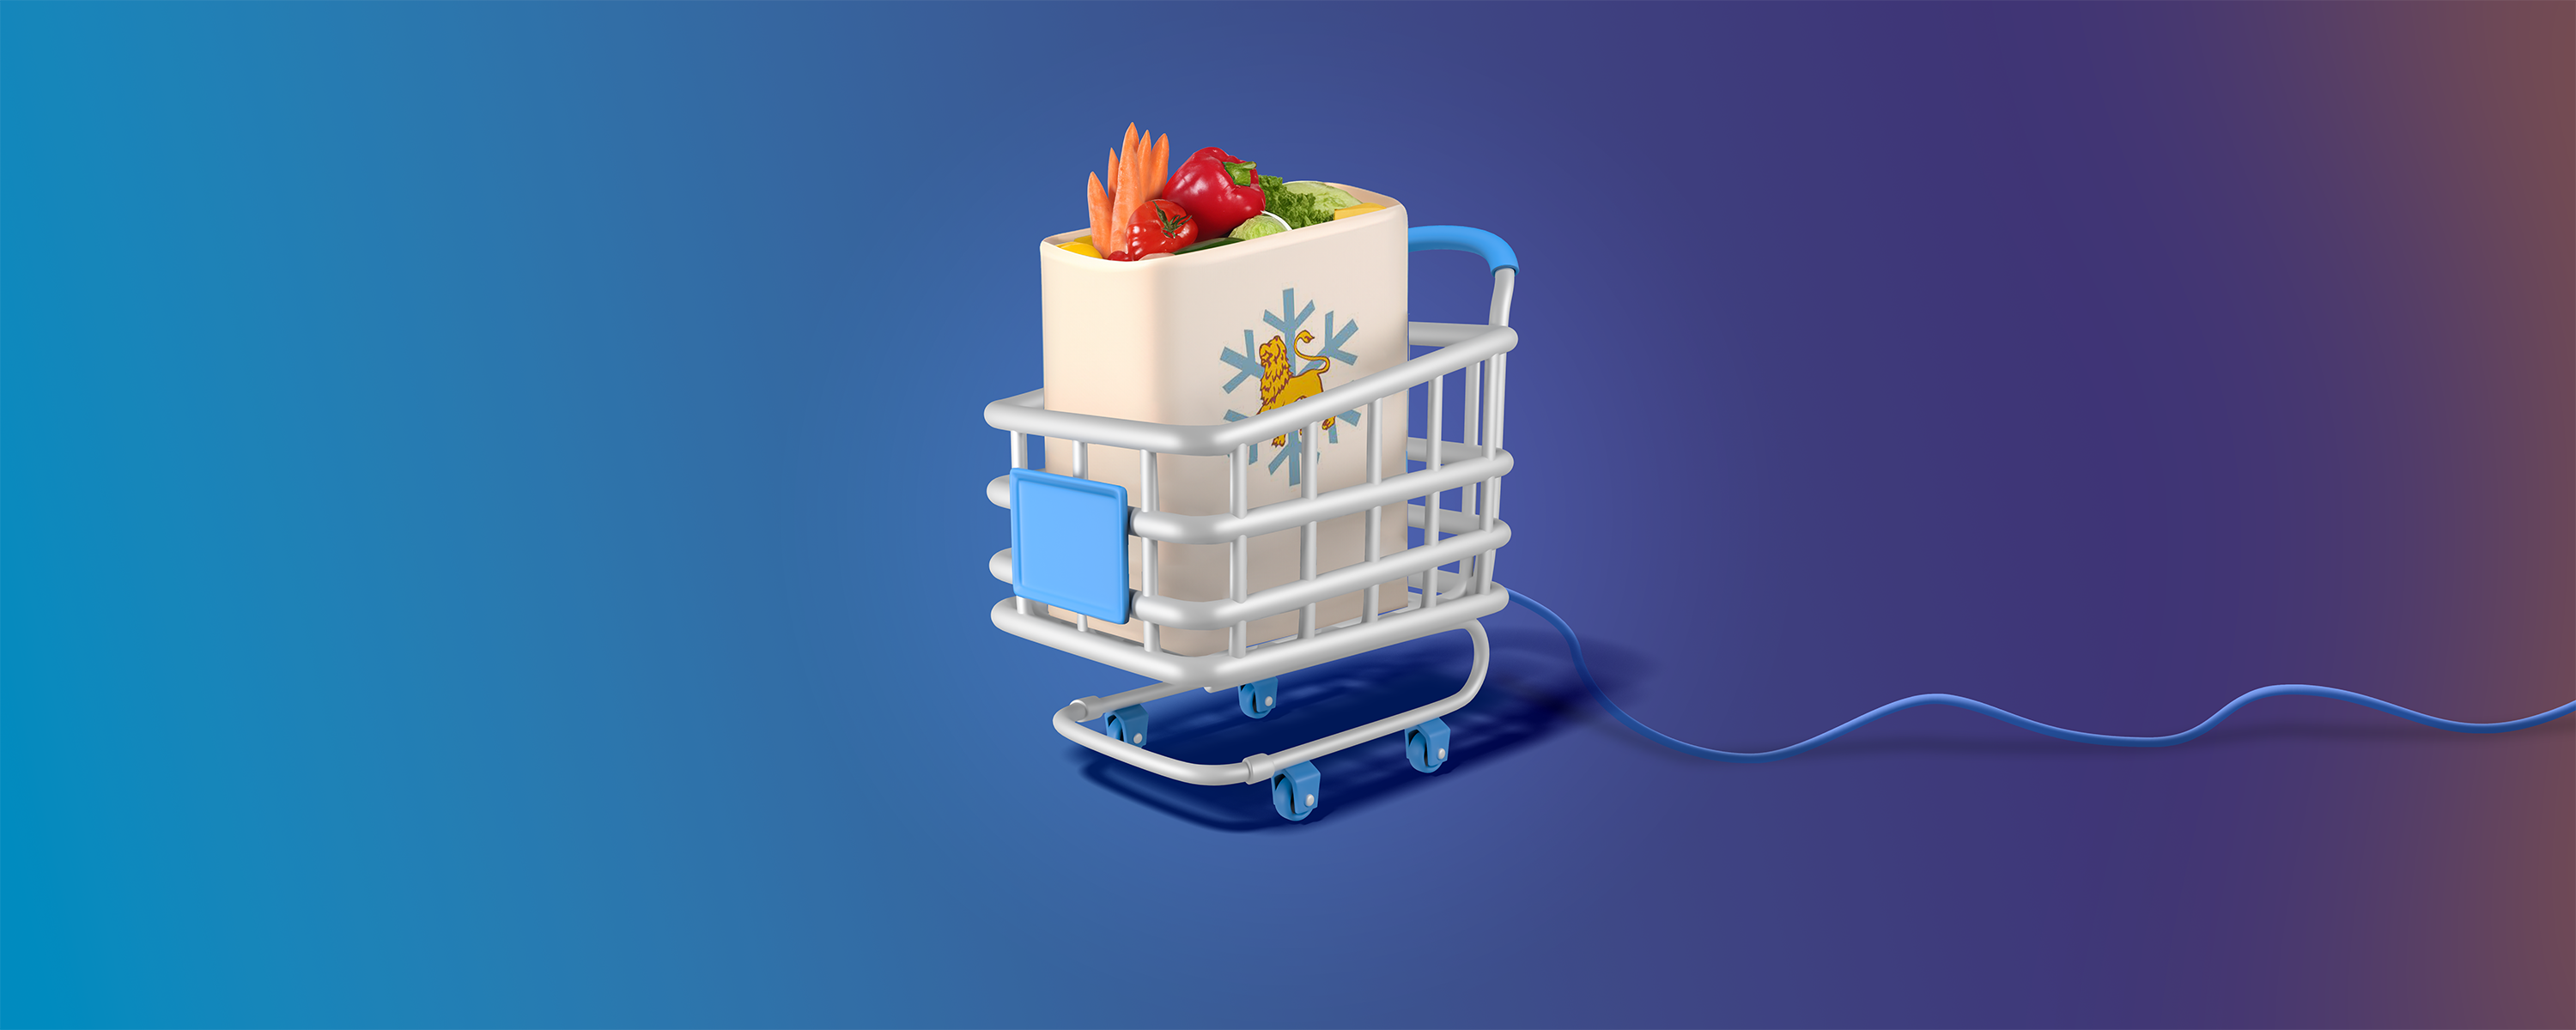 Интернет для ритейла: как «Львовхолод» обеспечивает работу более 200 супермаркетов